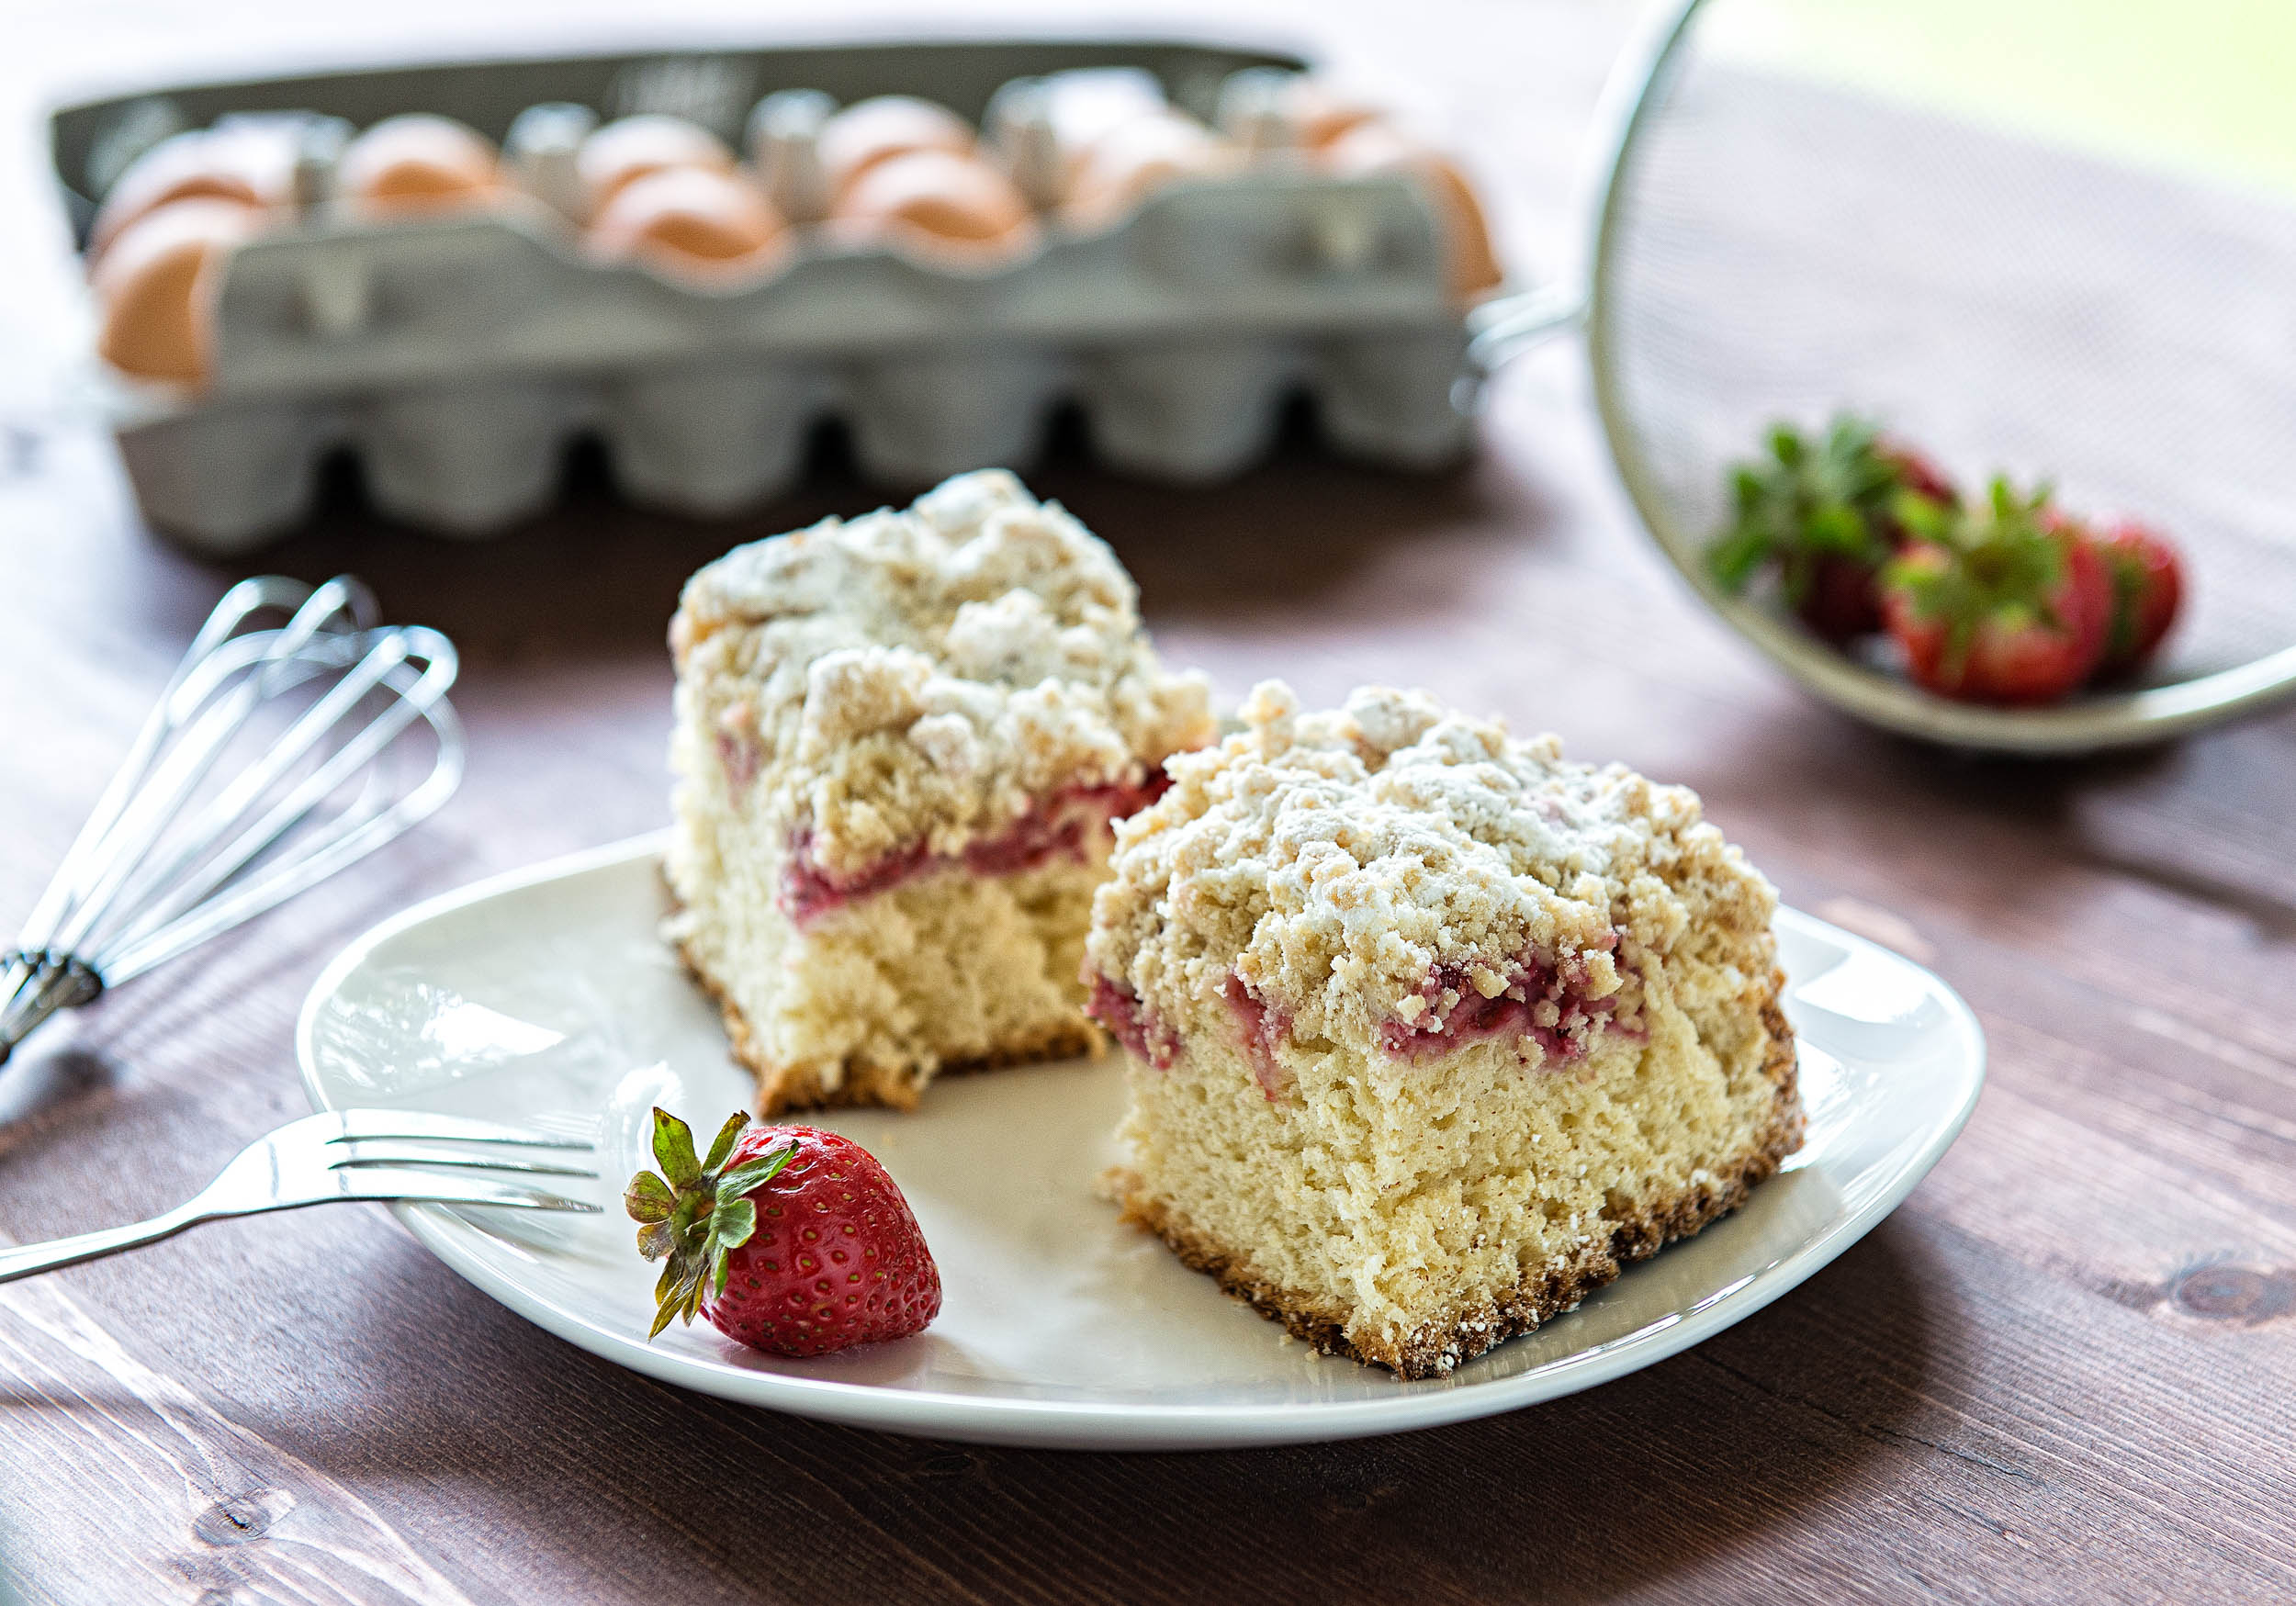 Homemade Yeast Cake with raspberries